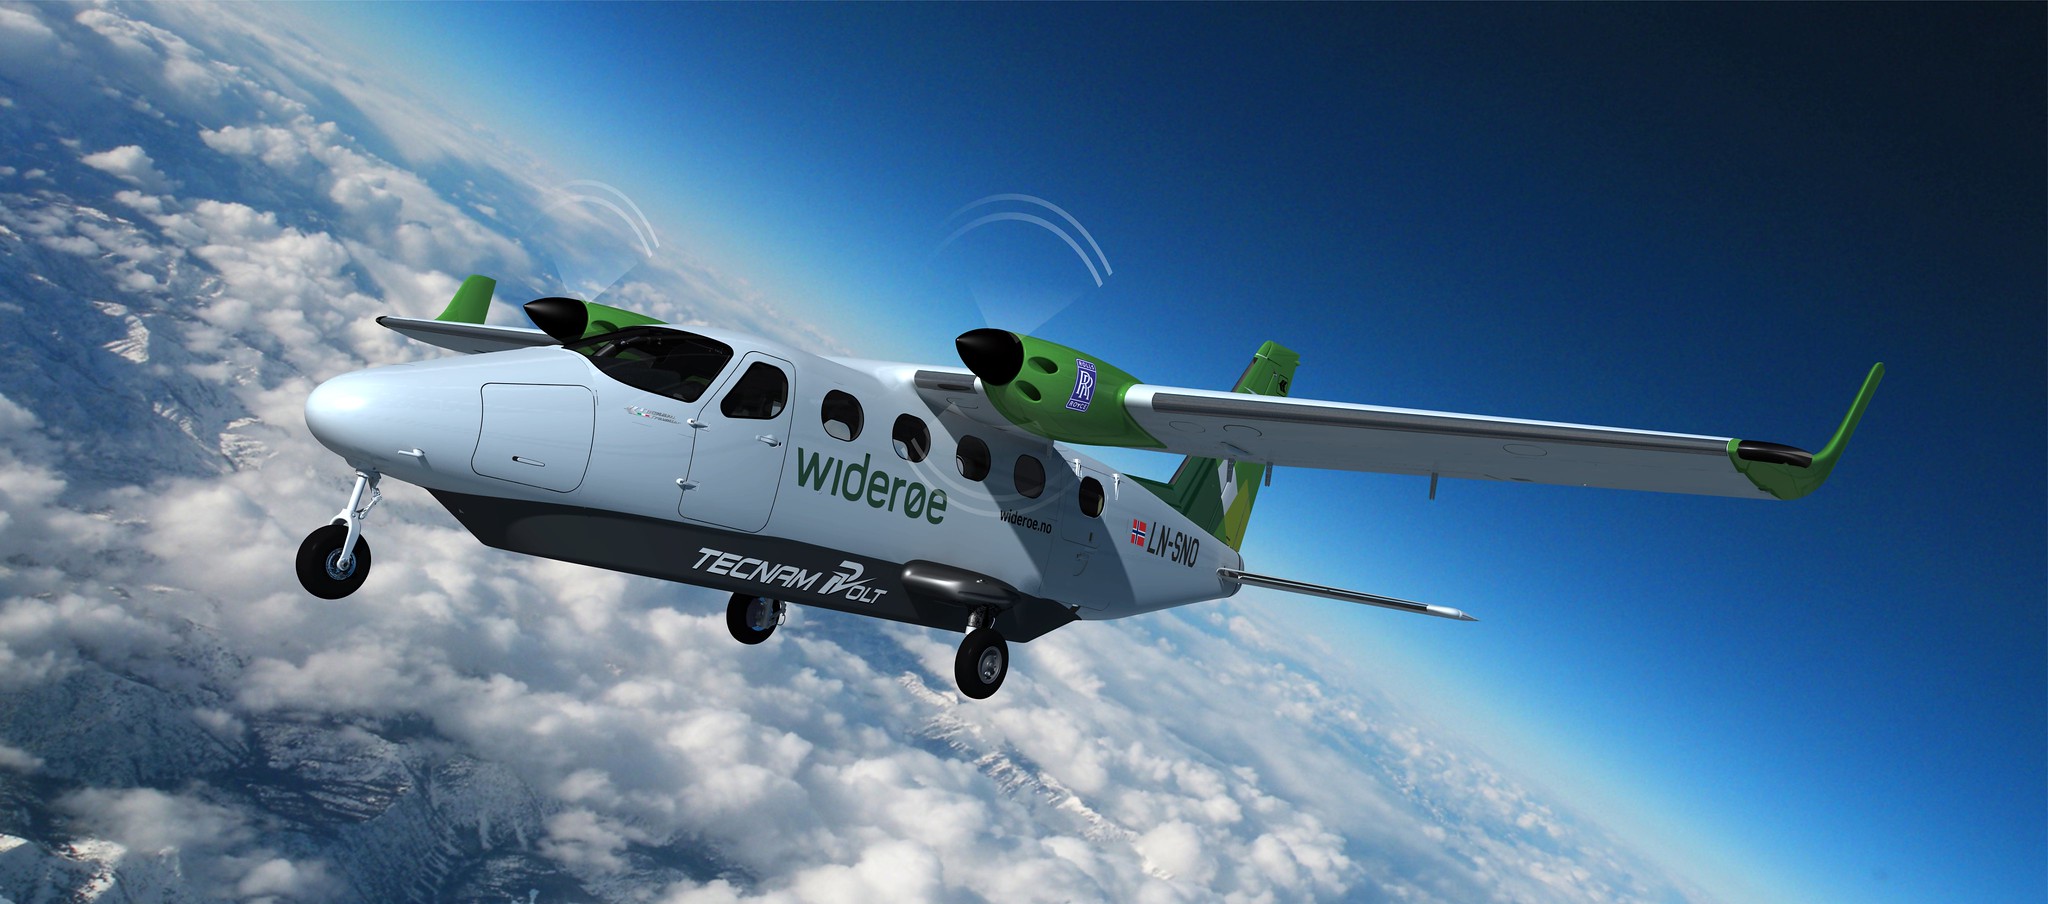 ロールス・ロイスとテクナム、ヴィデロー航空と全電動飛行機開発　2026年就航へ